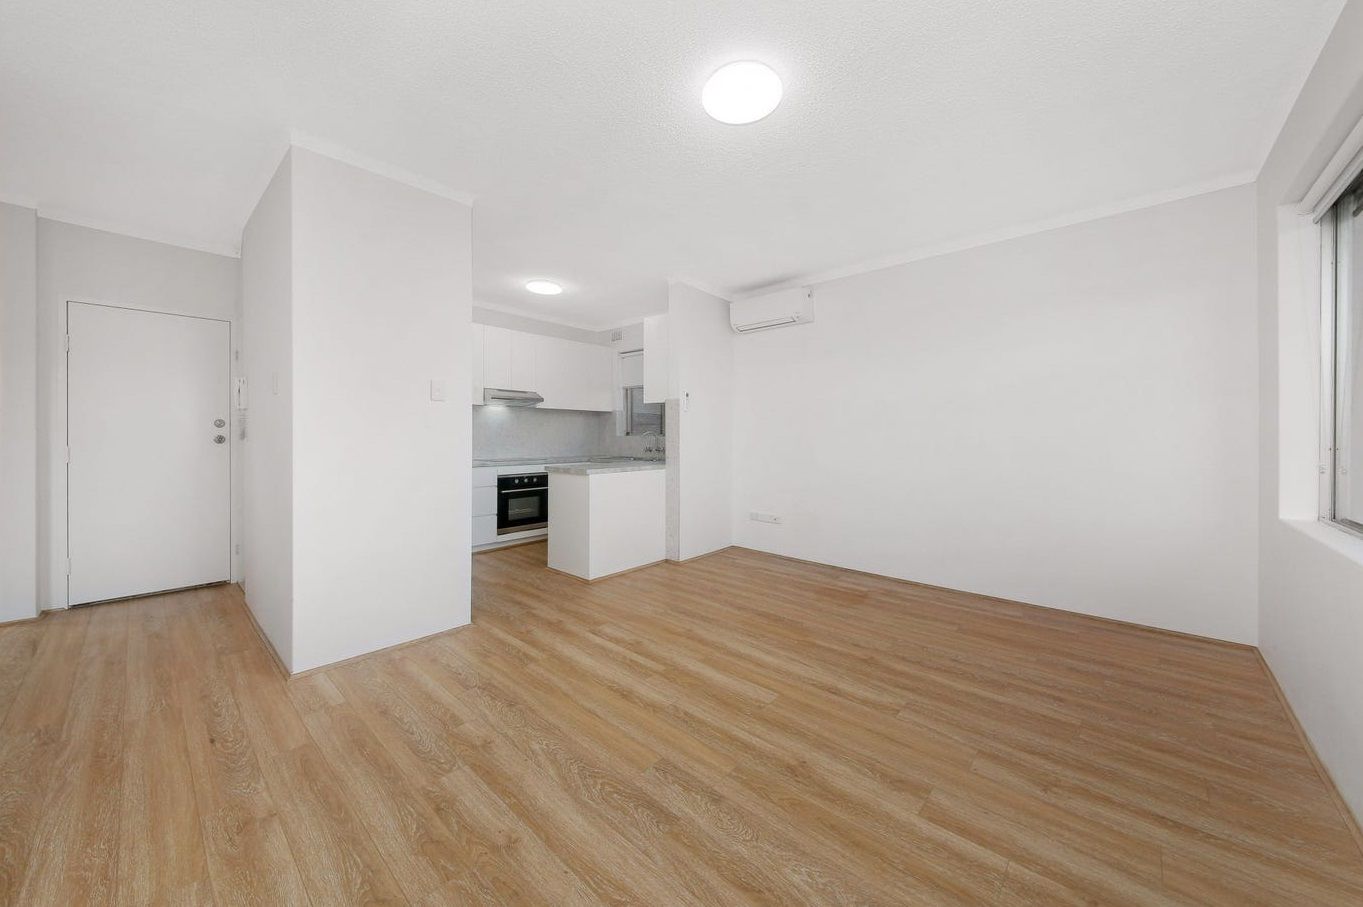 2 bedrooms Apartment / Unit / Flat in 7/8 Allen Street HARRIS PARK NSW, 2150